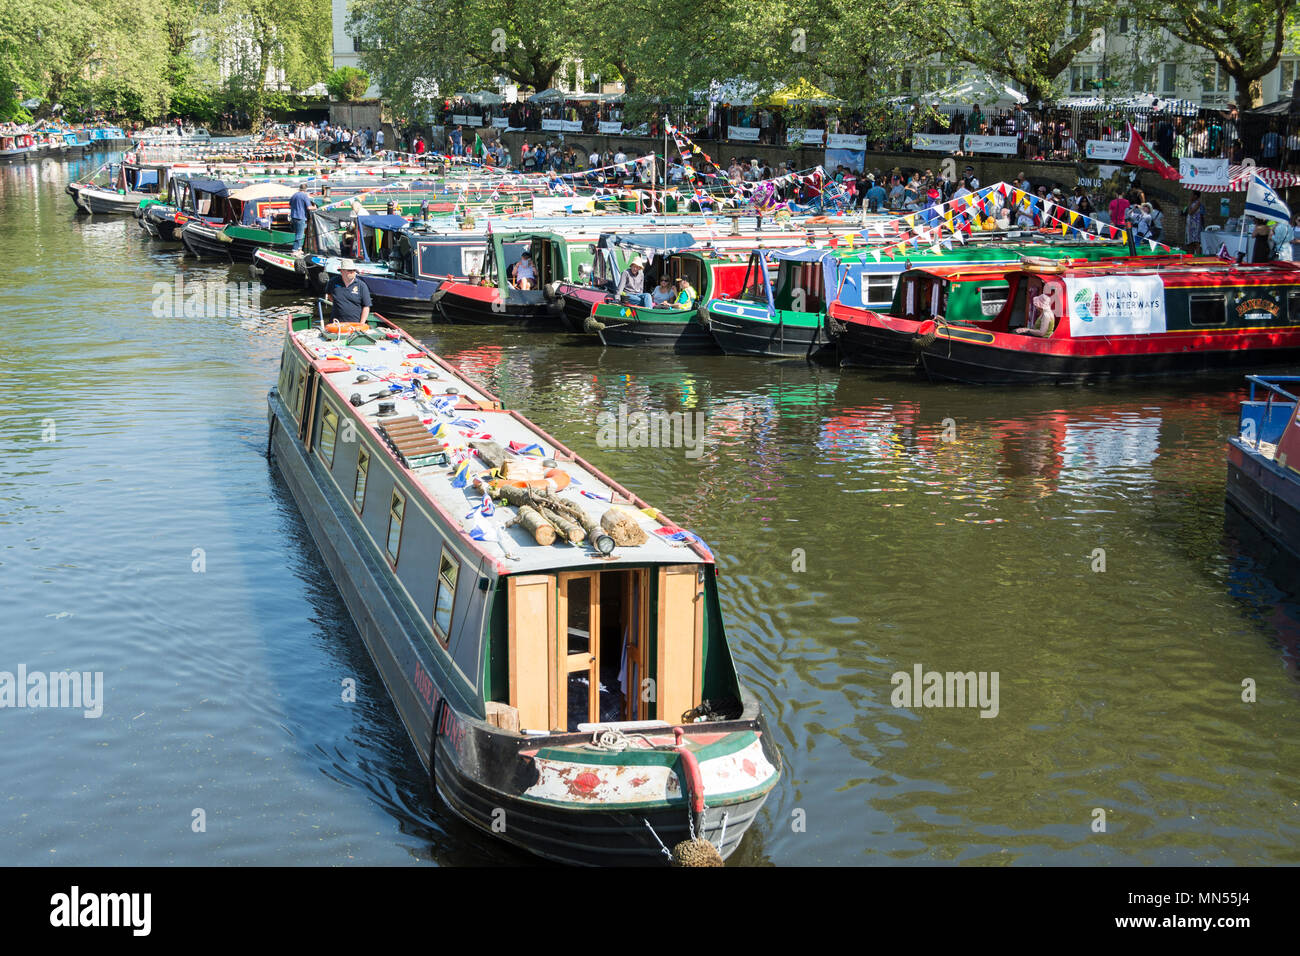 Kanal Boote in der Canalway Kavalkade Wasserstraßen Festival in London's Little Venice. Stockfoto